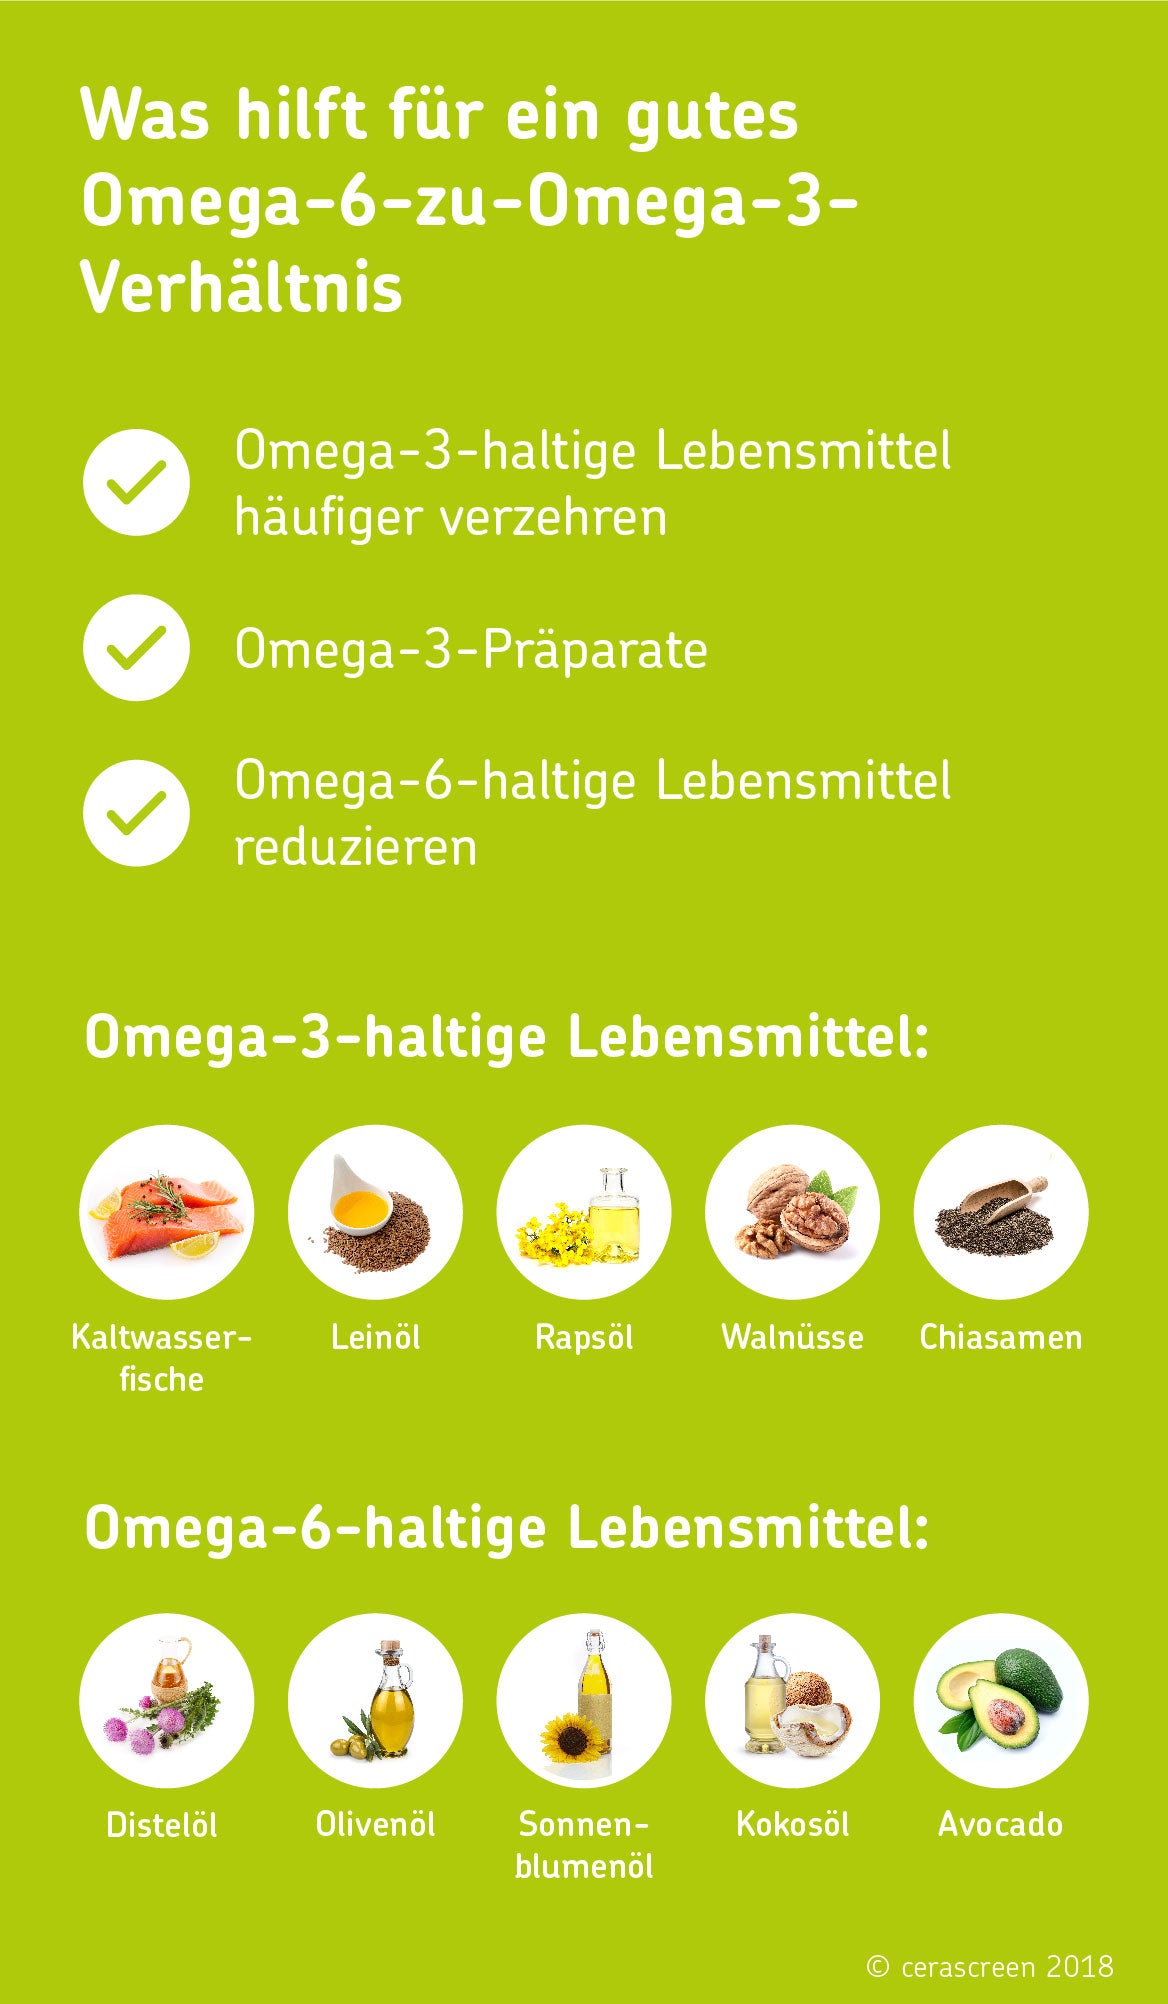 Omega-3 und Omega-6 Fettsäuren